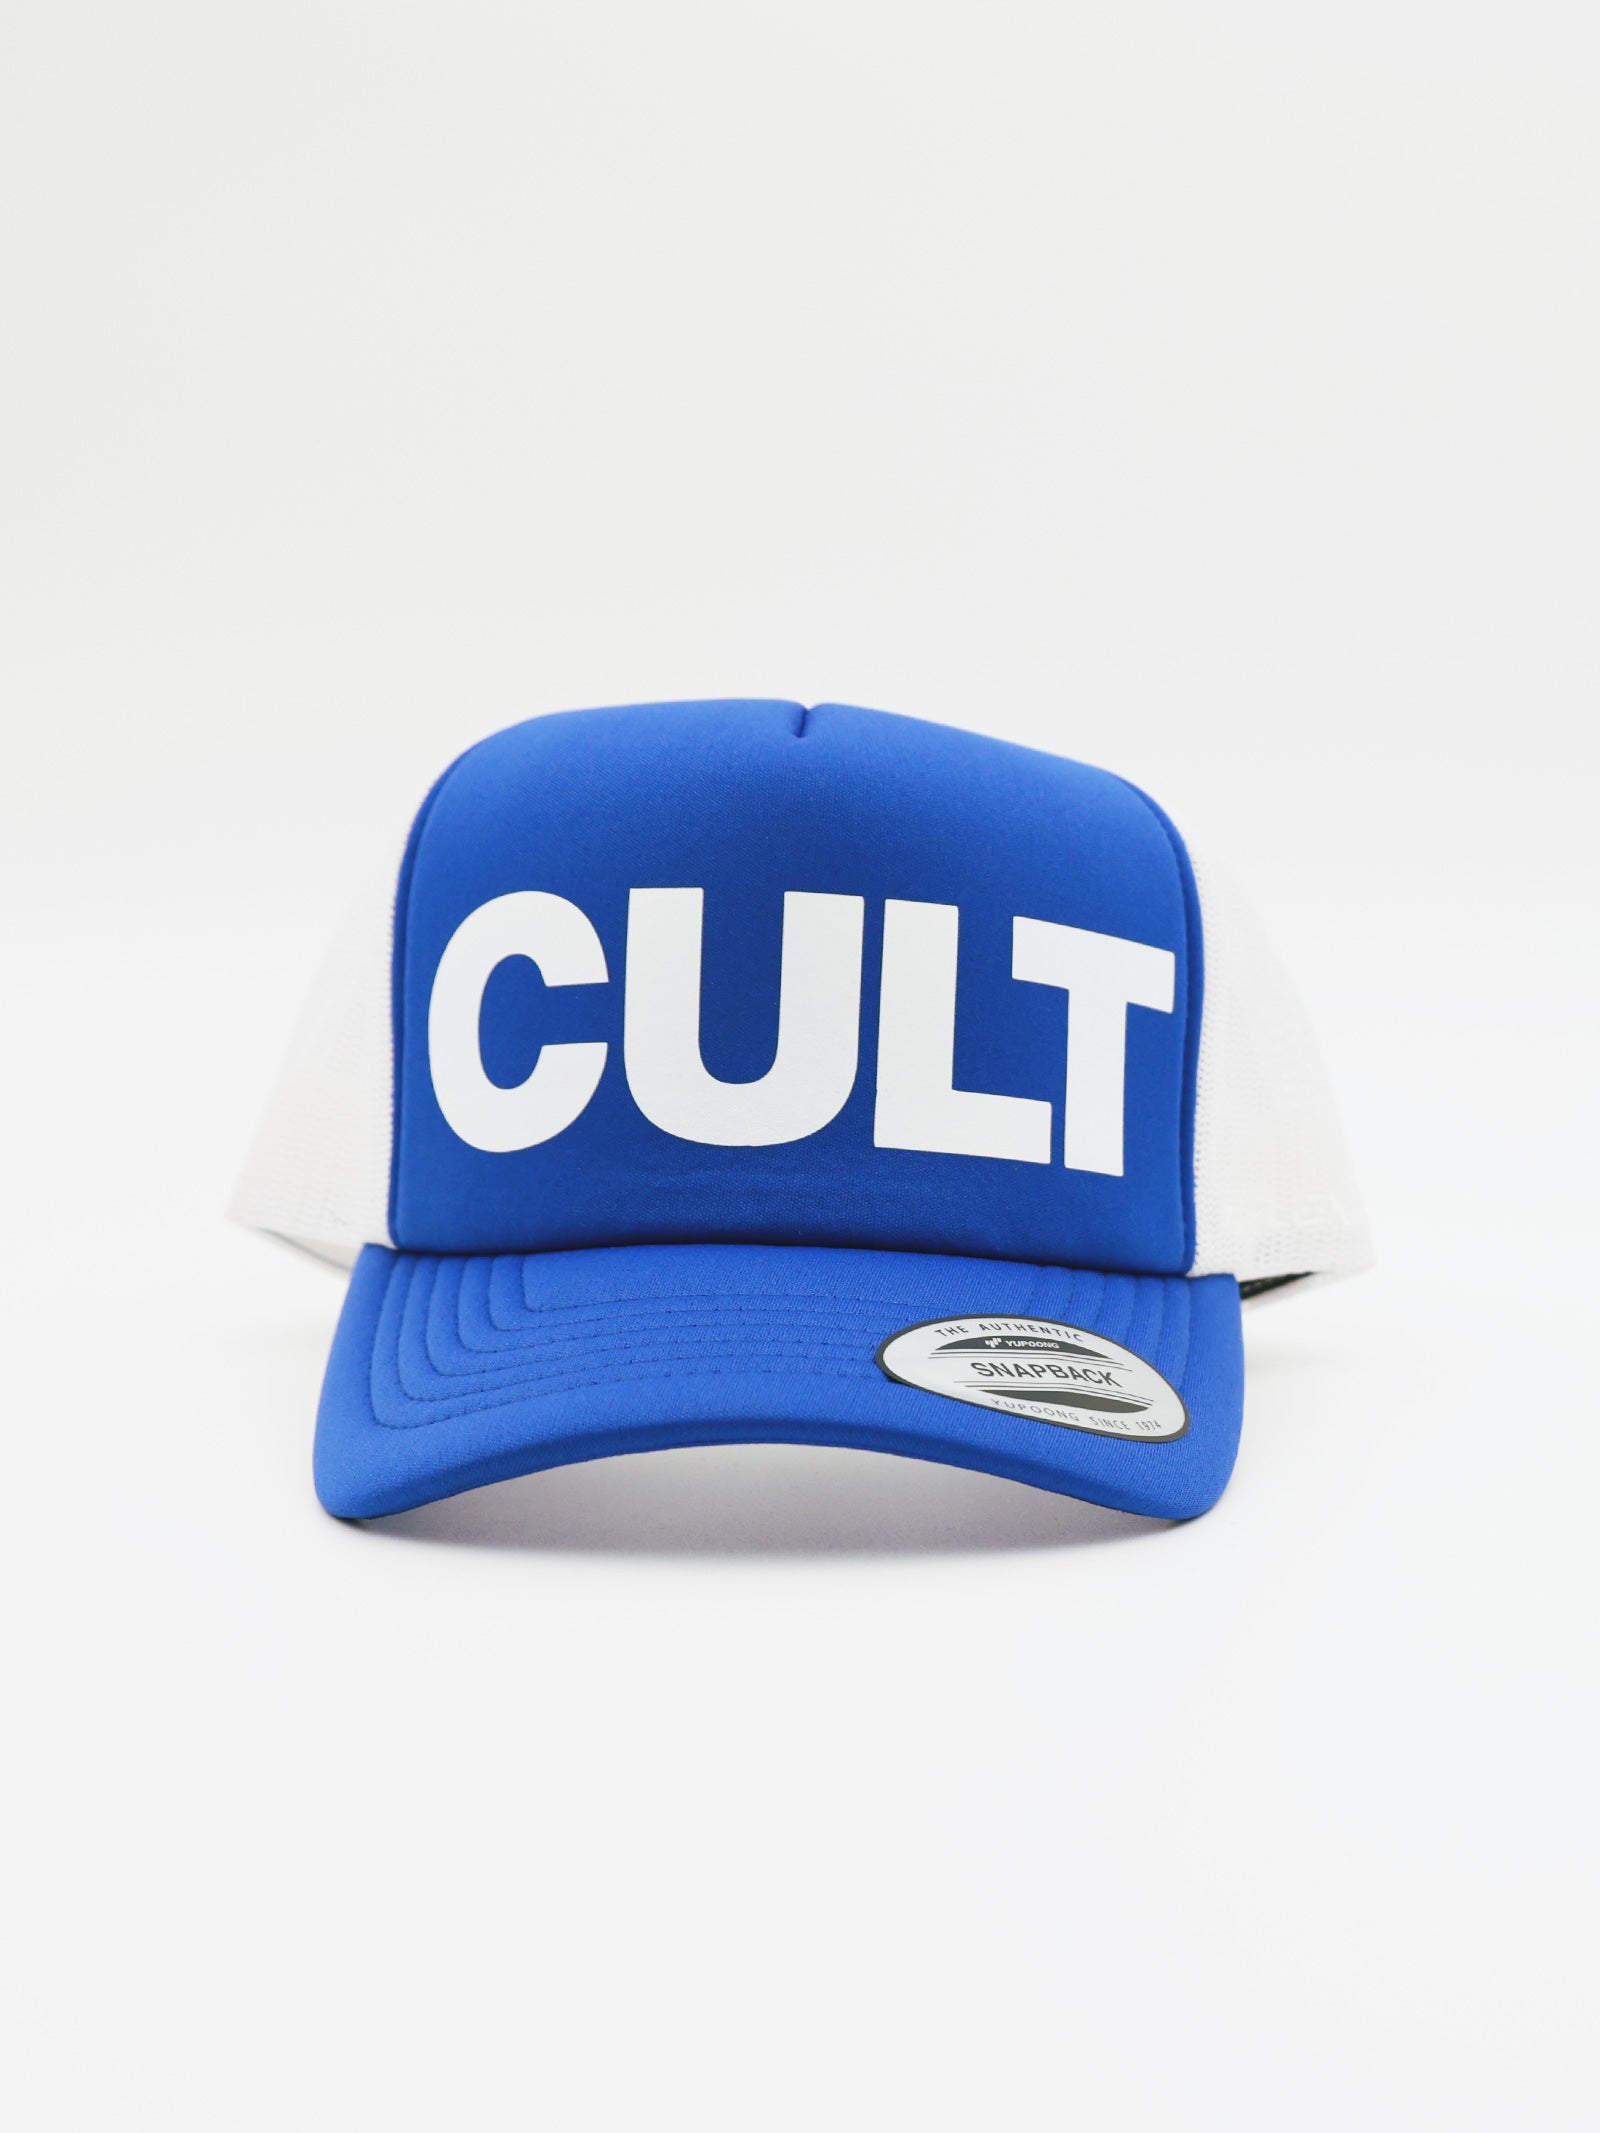 Blue¹ Cult Trucker Cap